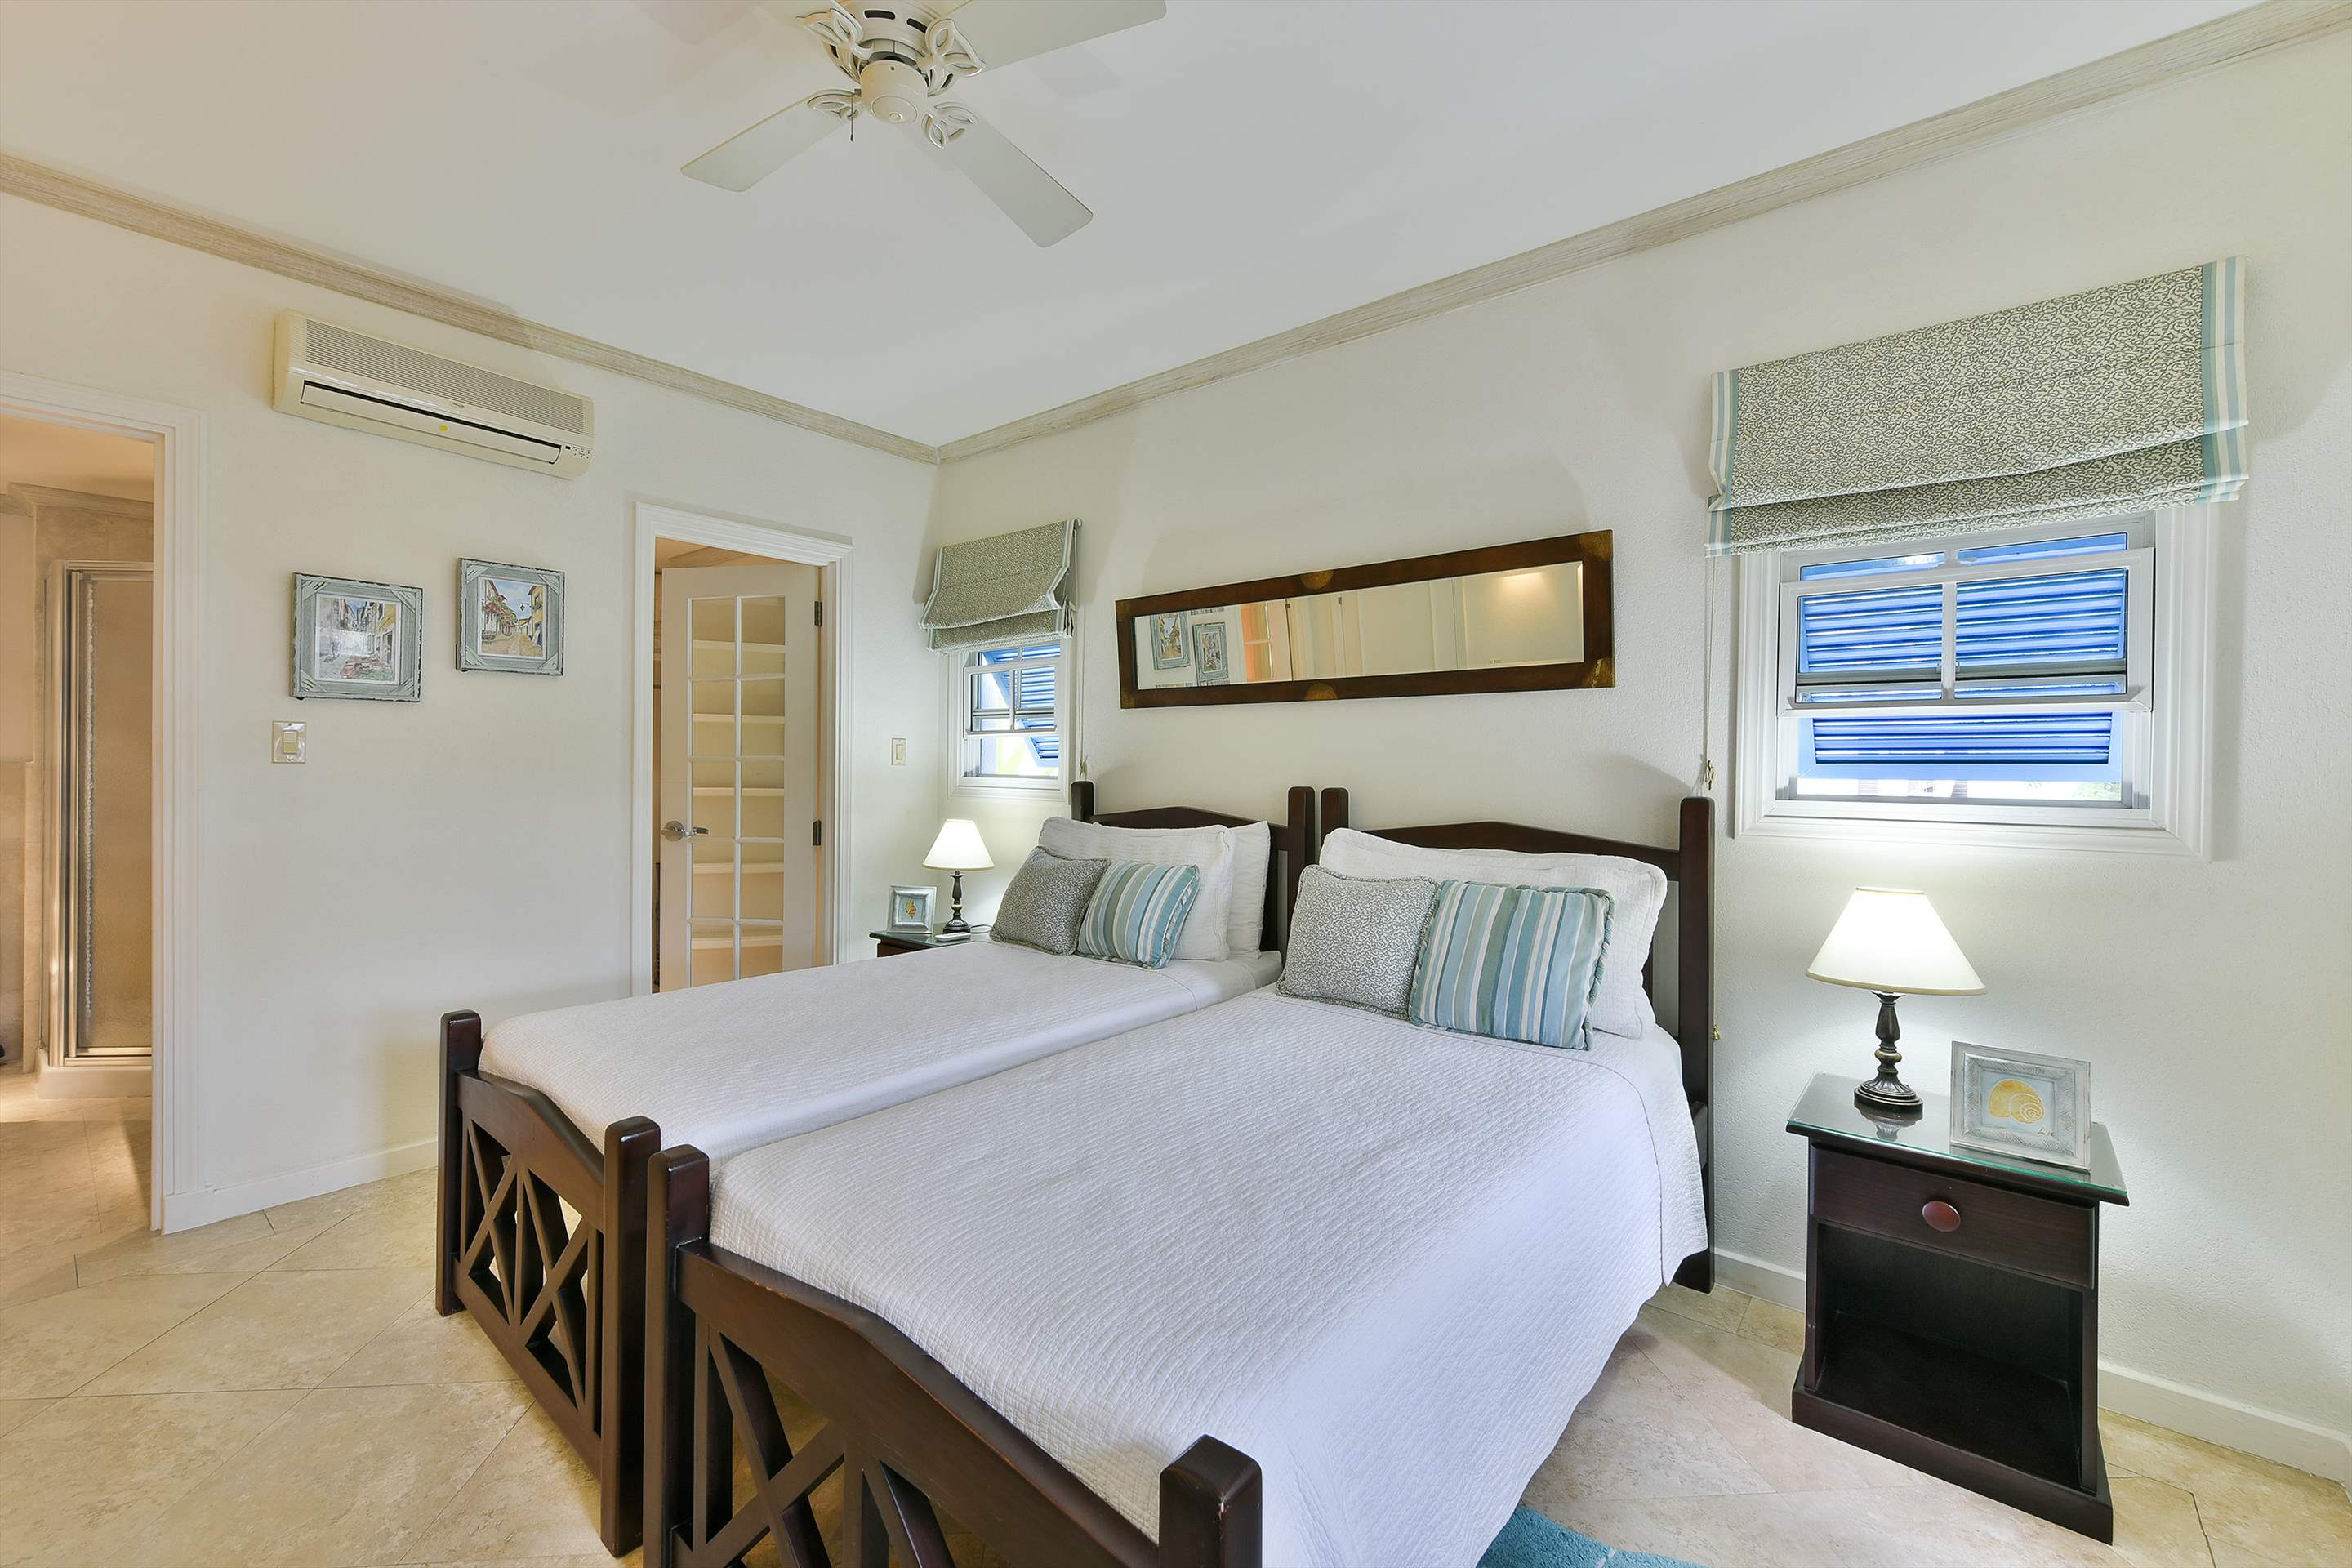 Maxwell Beach Villas 101, 2 bedroom, 2 bedroom apartment in St. Lawrence Gap & South Coast, Barbados Photo #16